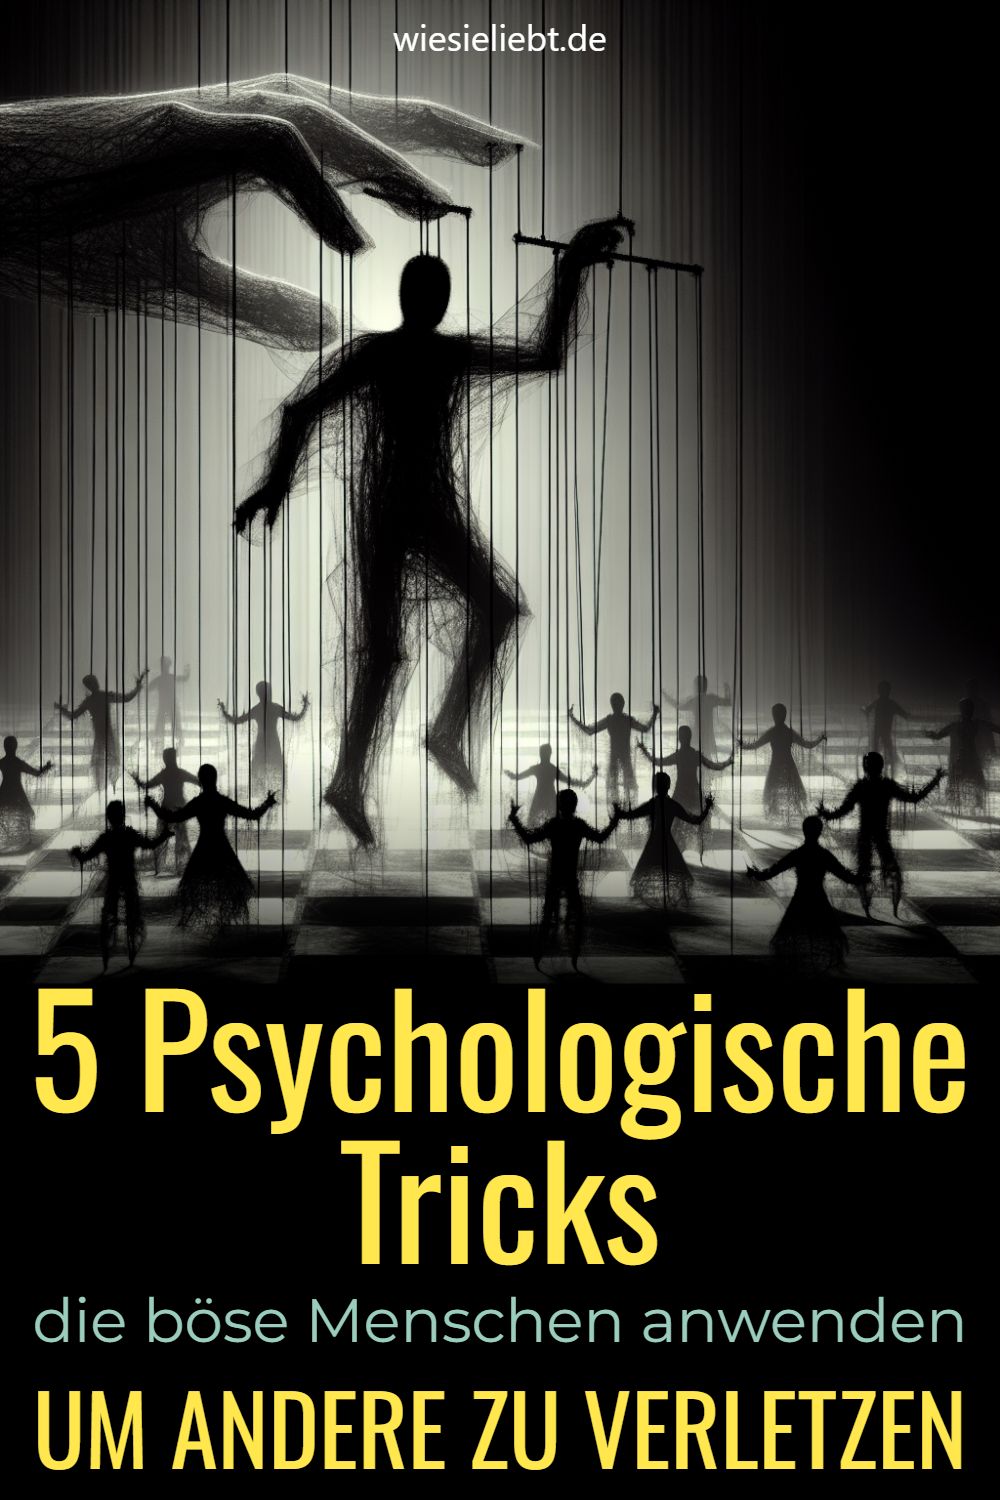 5 Psychologische Tricks die böse Menschen anwenden UM ANDERE ZU VERLETZEN